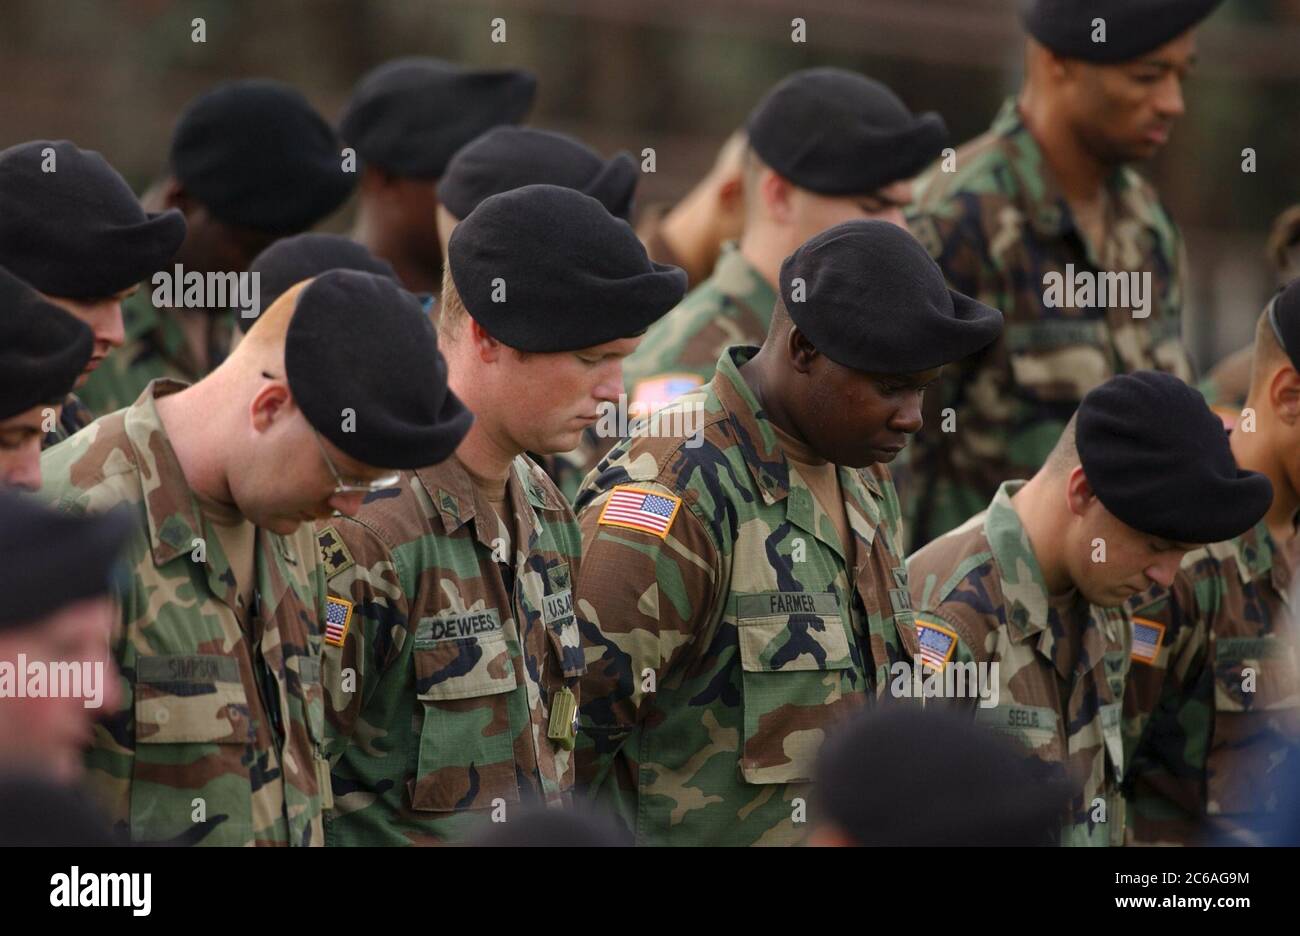 Fort Hood, Texas, USA, September 2 2004: Soldaten in Tarnuniformen und schwarzen Baskenmützen beugen sich während einer Gedenkfeier für die 81 Soldaten, die bei der Operation Iraqi Freedom von der 4. Infanteriedivision in Fort Hood getötet wurden, vor den Kopf. ©Bob Daemmrich Stockfoto